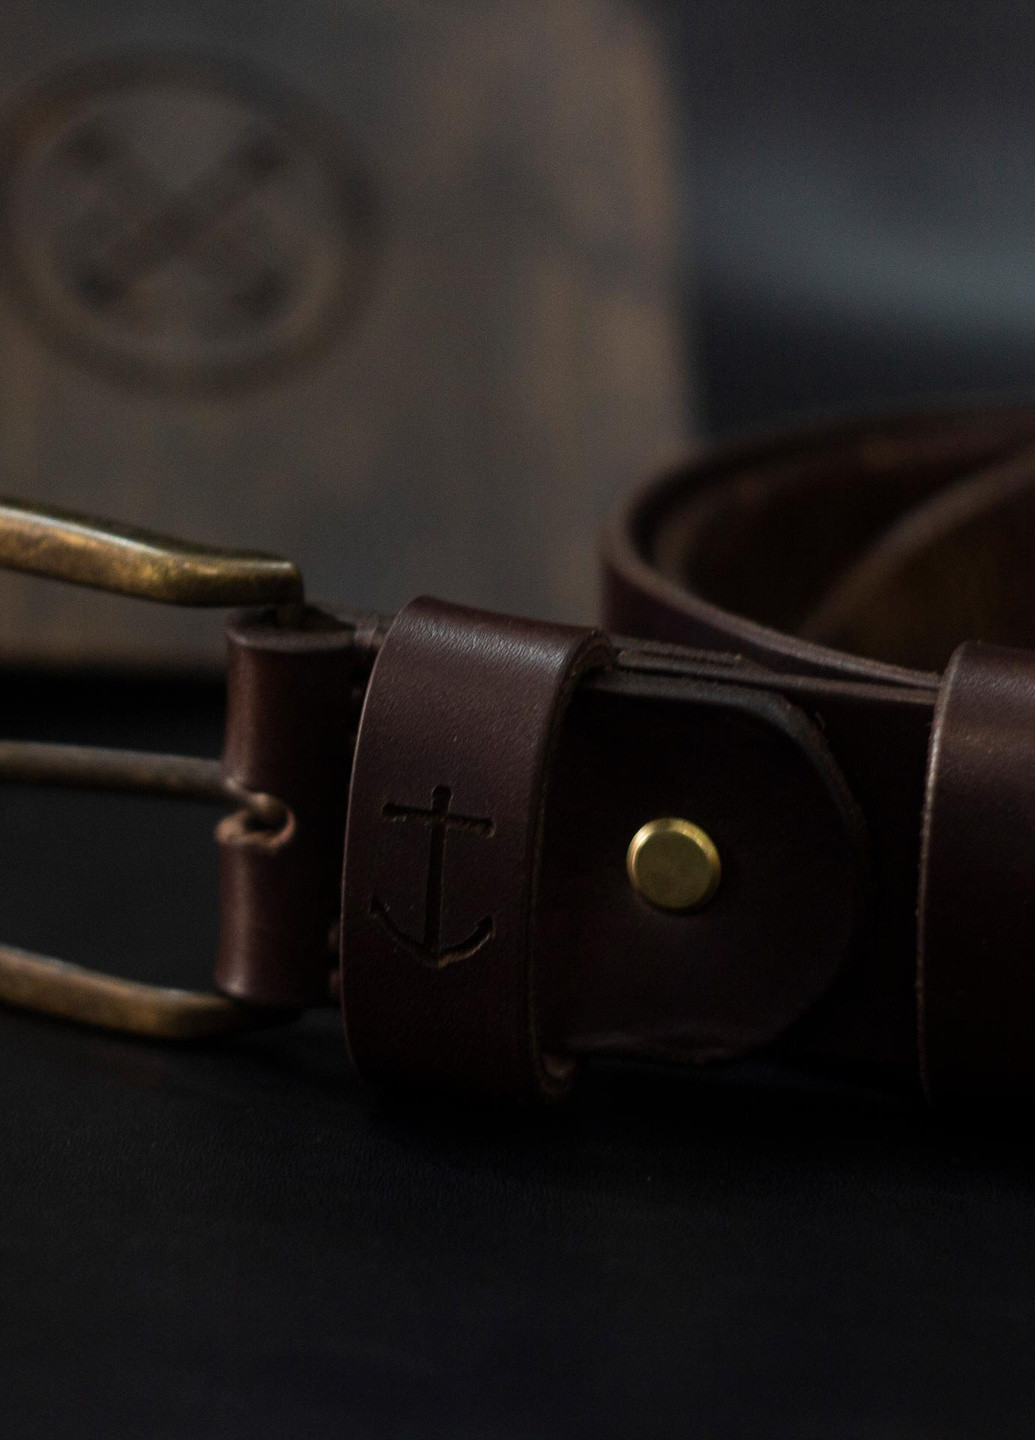 Ремень мужской кожаный из натуральной итальянской кожи в деревянной подарочной коробочке - Коричневый Anchor Stuff oldsalt belt (241801895)